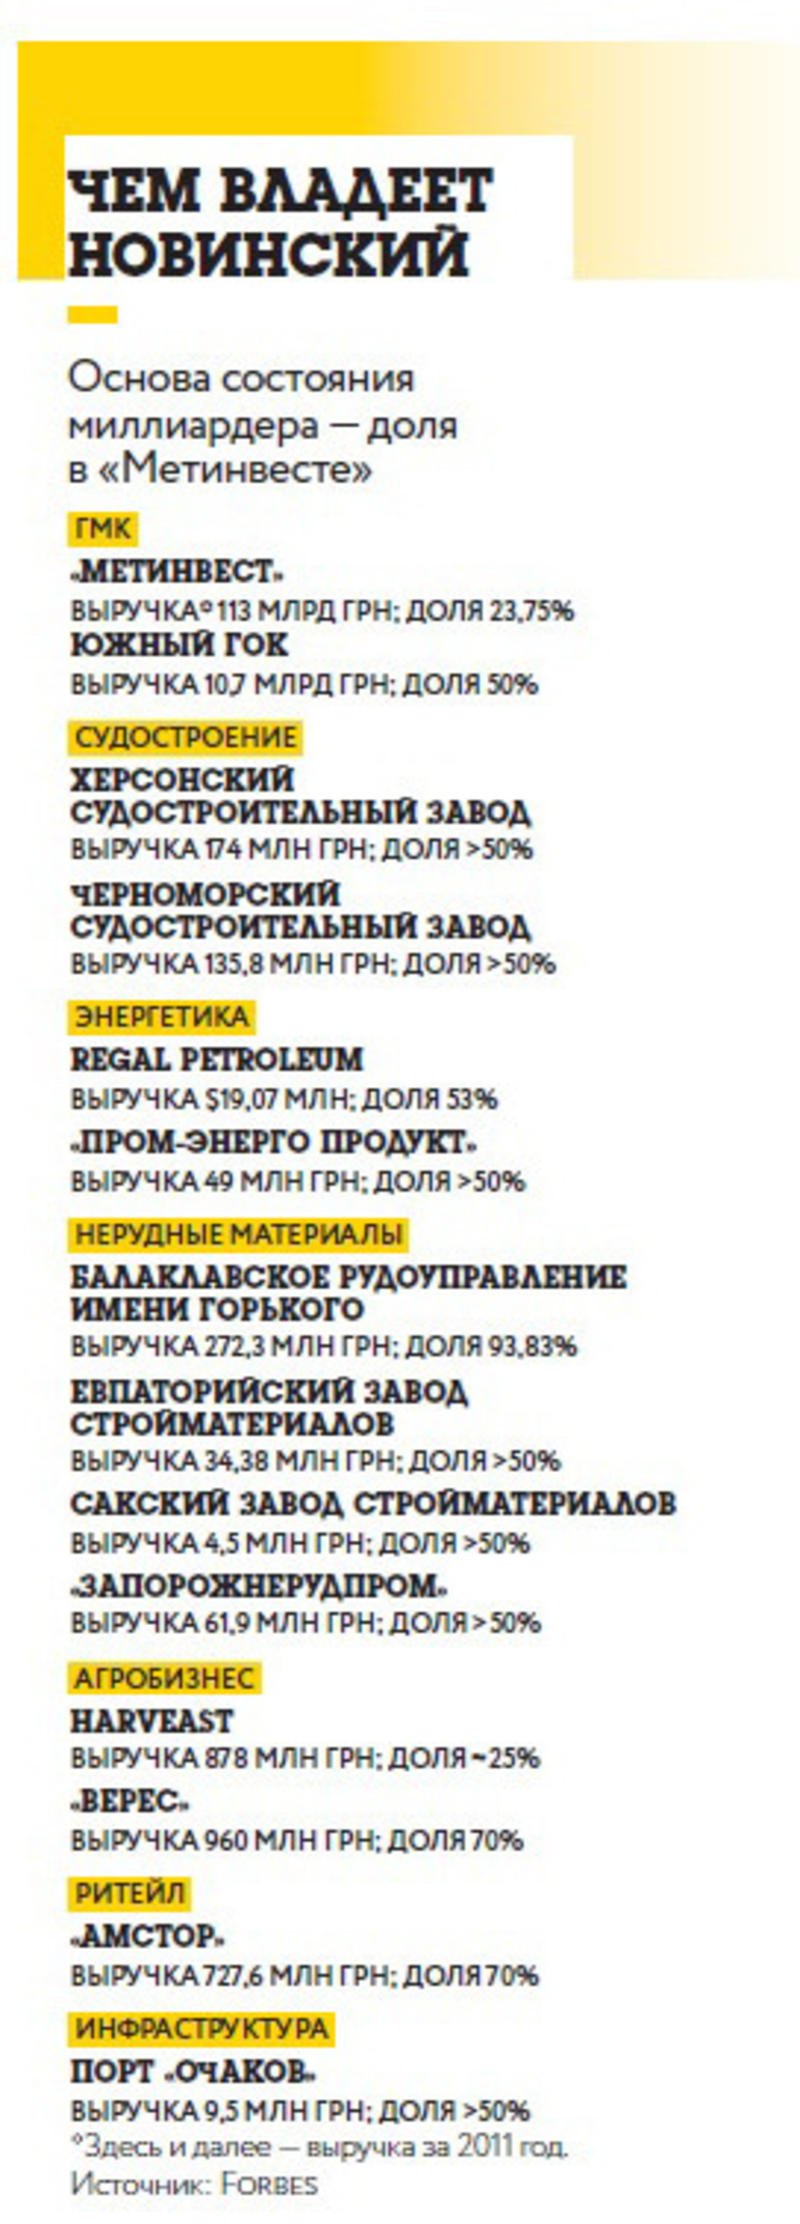 5 фактов о самом богатом россиянине в Украине / Forbes.ua